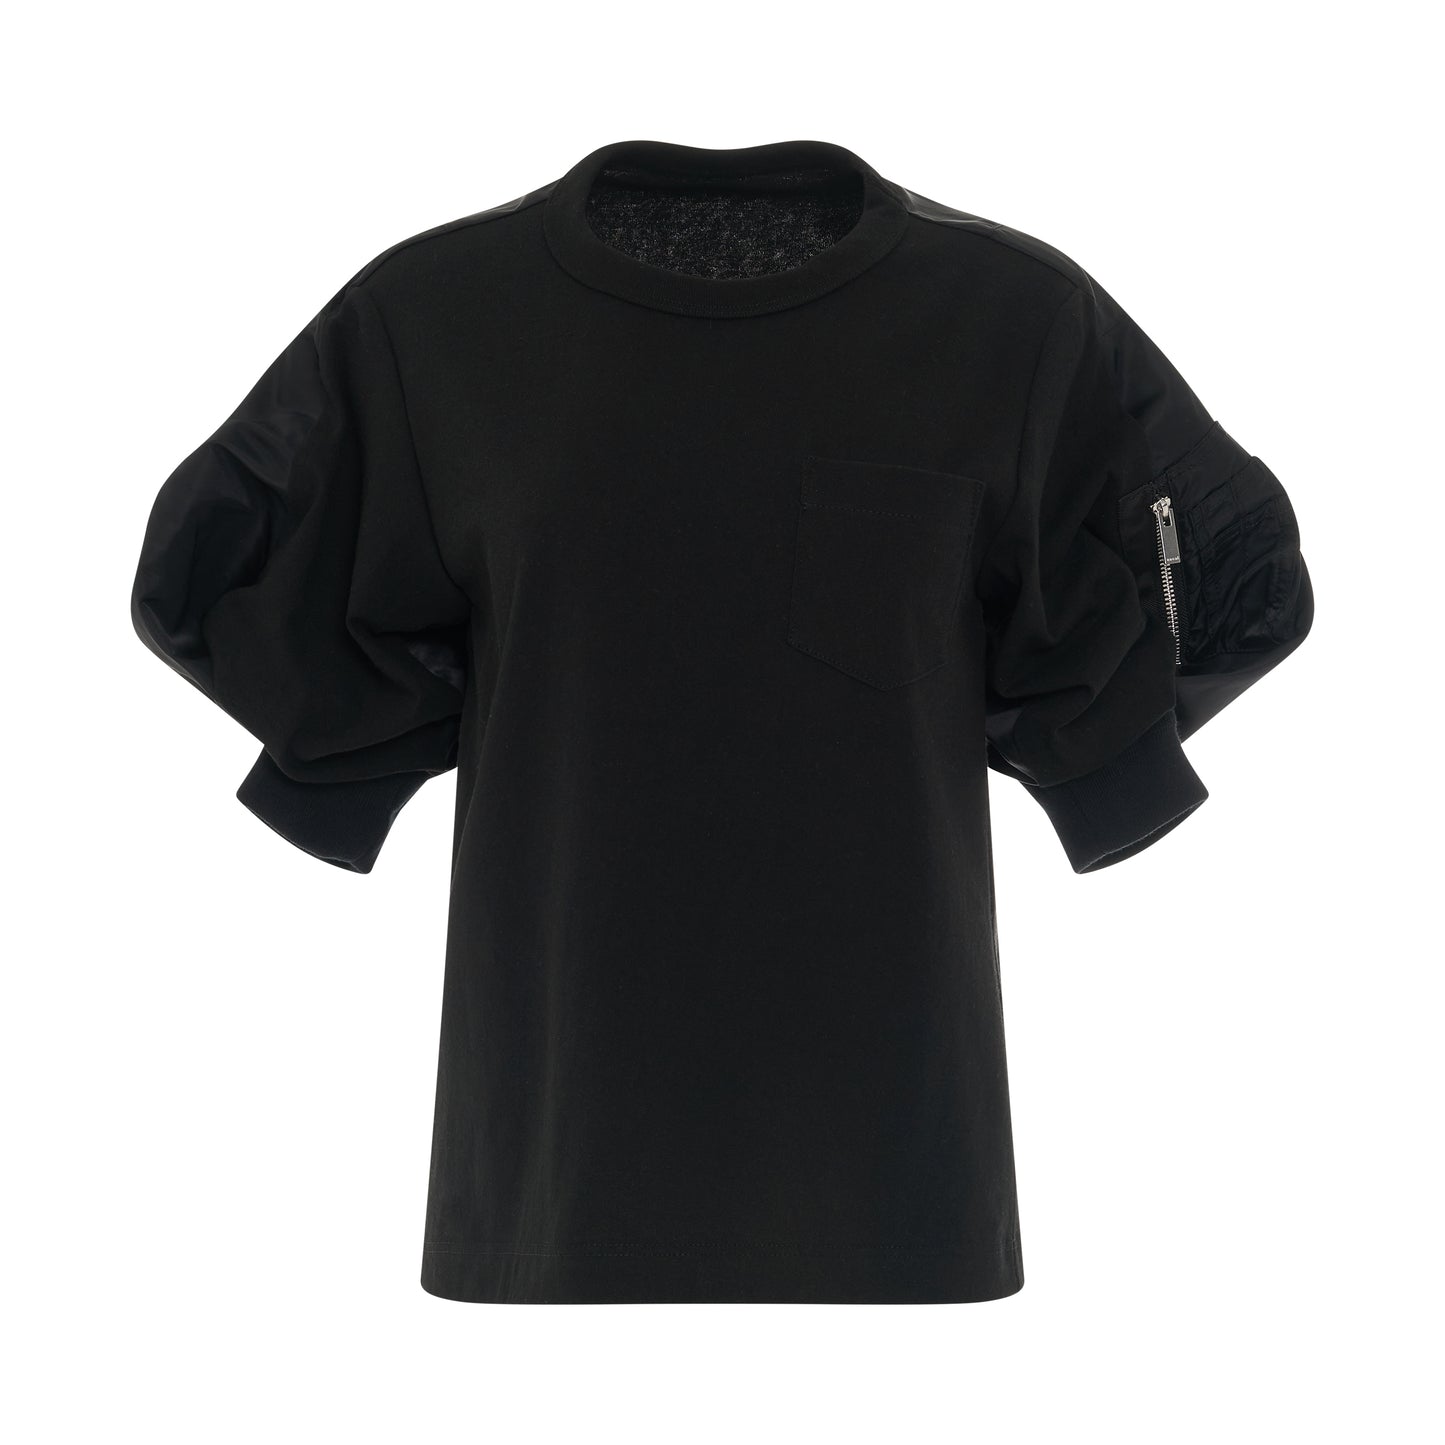 Nylon Twill Mix T-Shirt in Black